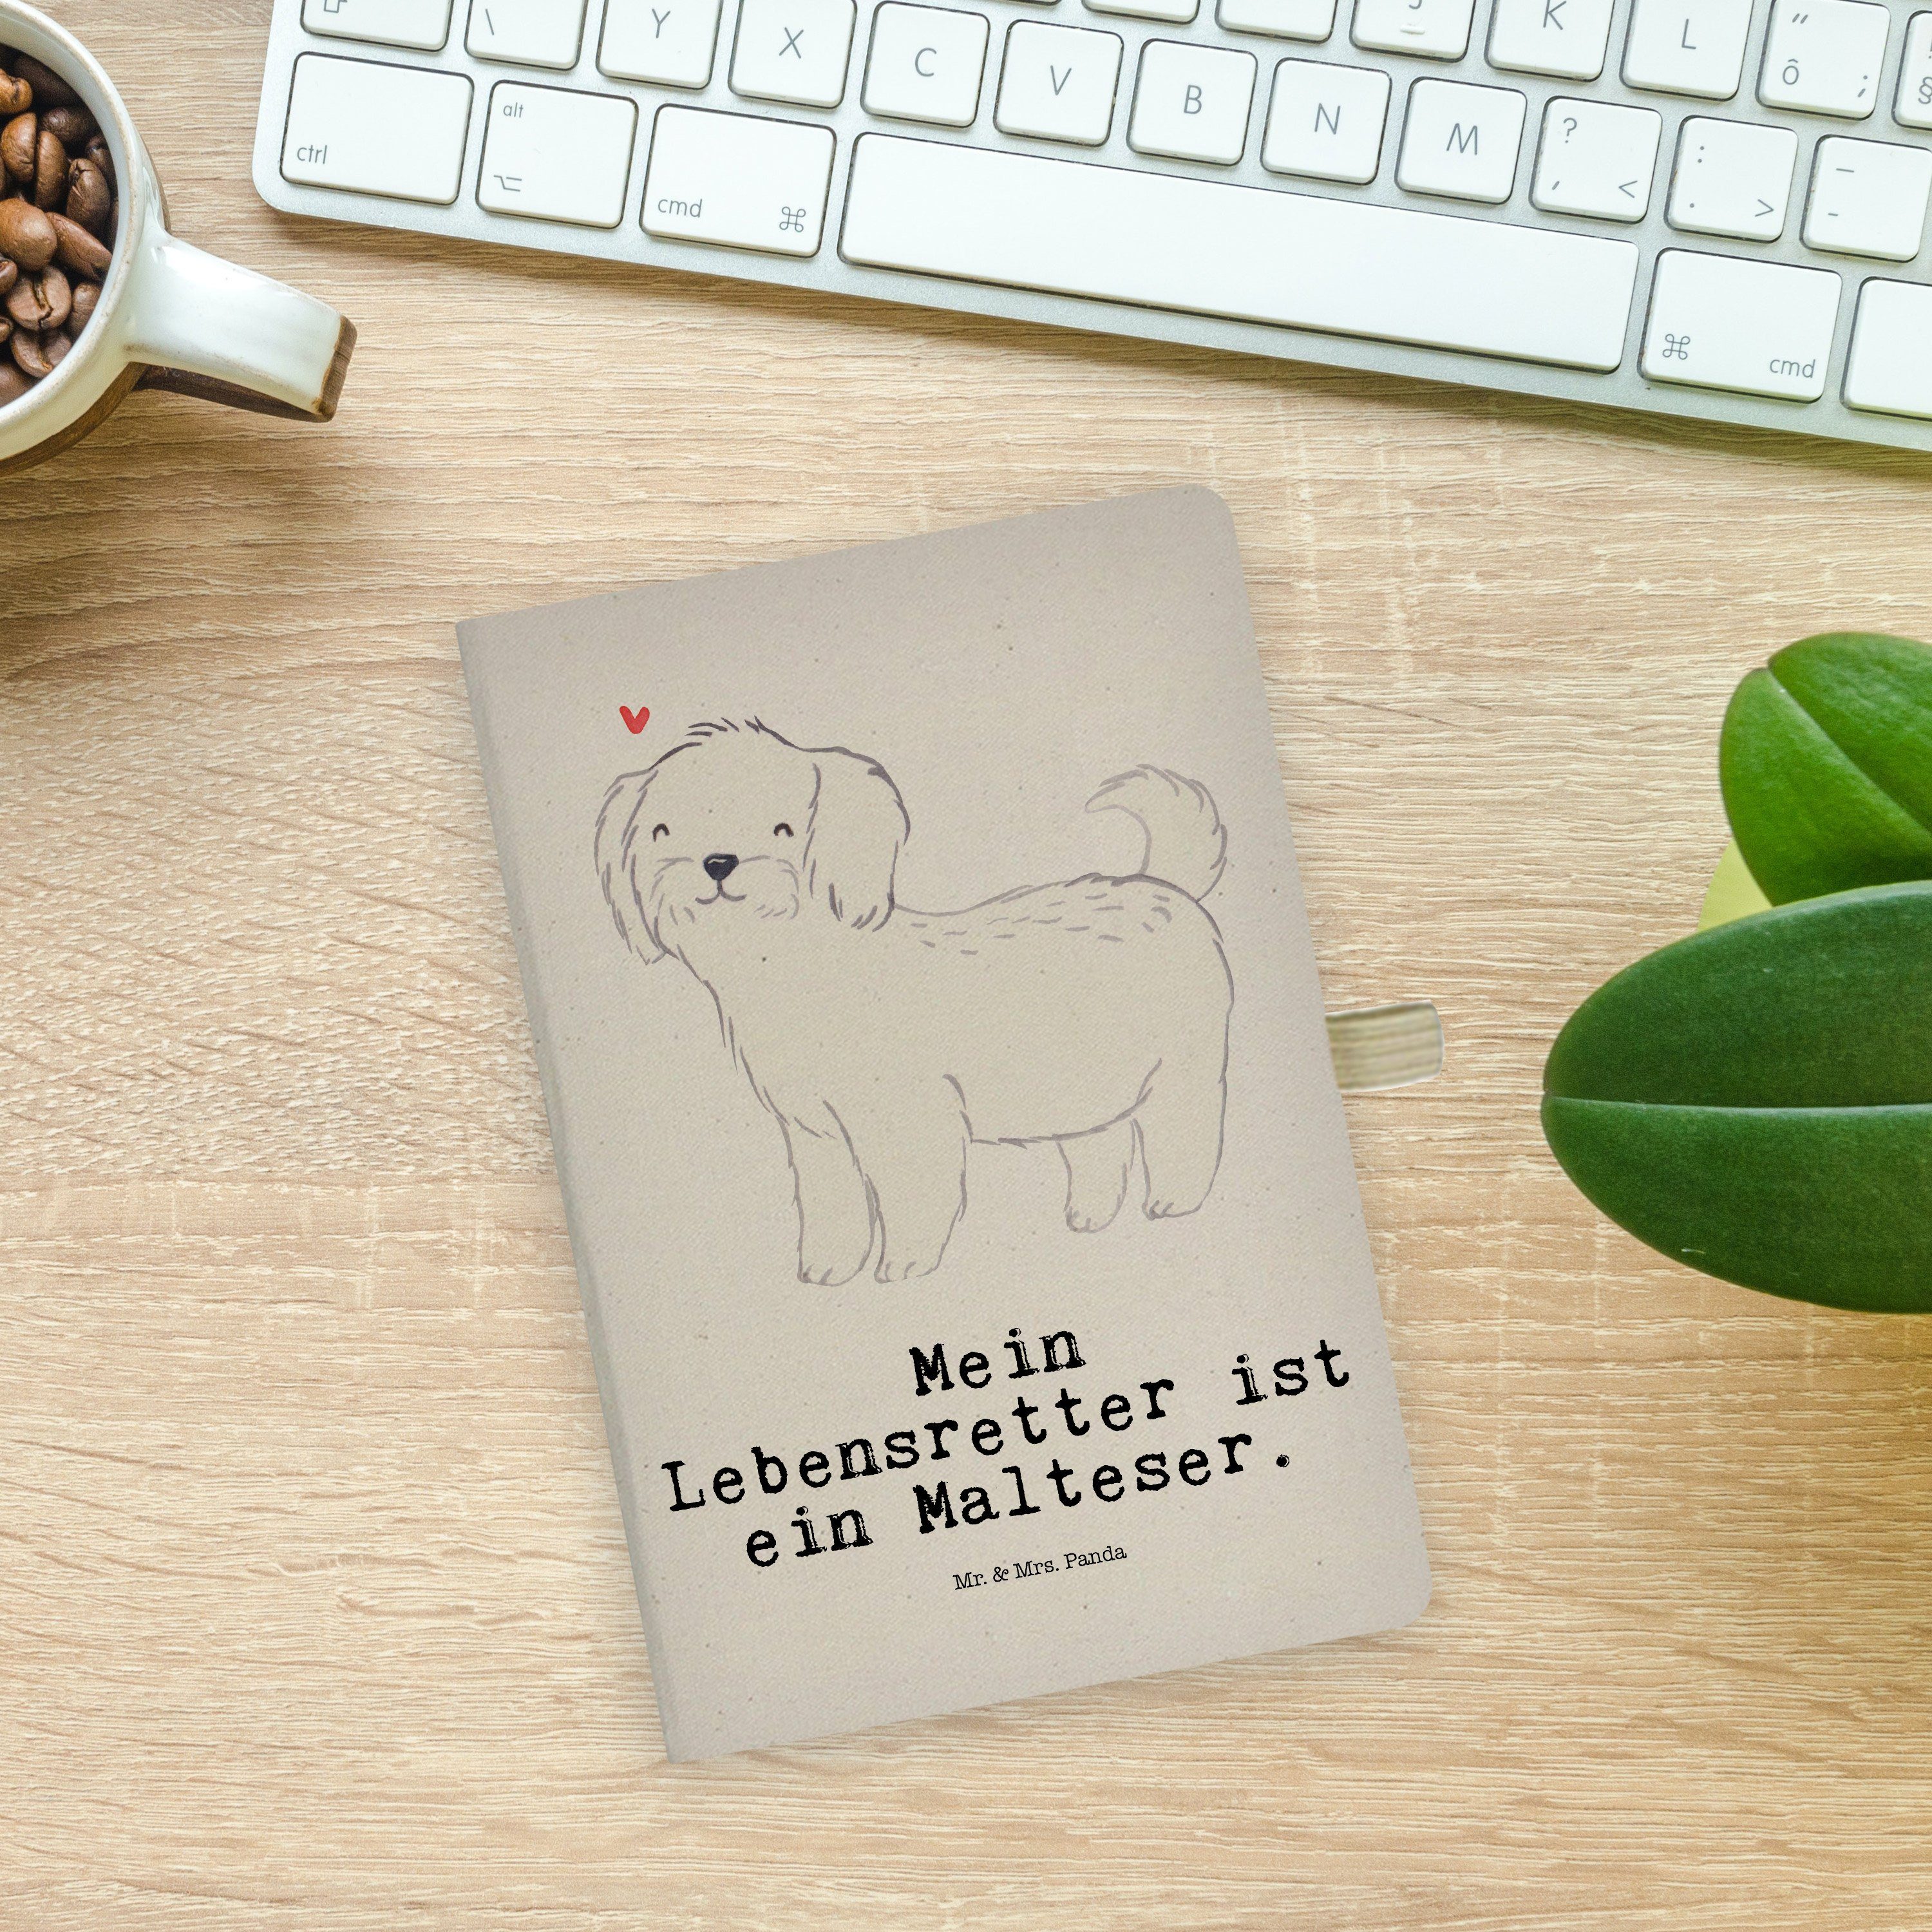 Mrs. & Lebensretter - S Mr. Notizblock, Kladde, Transparent Panda Geschenk, & Notizbuch Mrs. - Malteser Mr. Panda